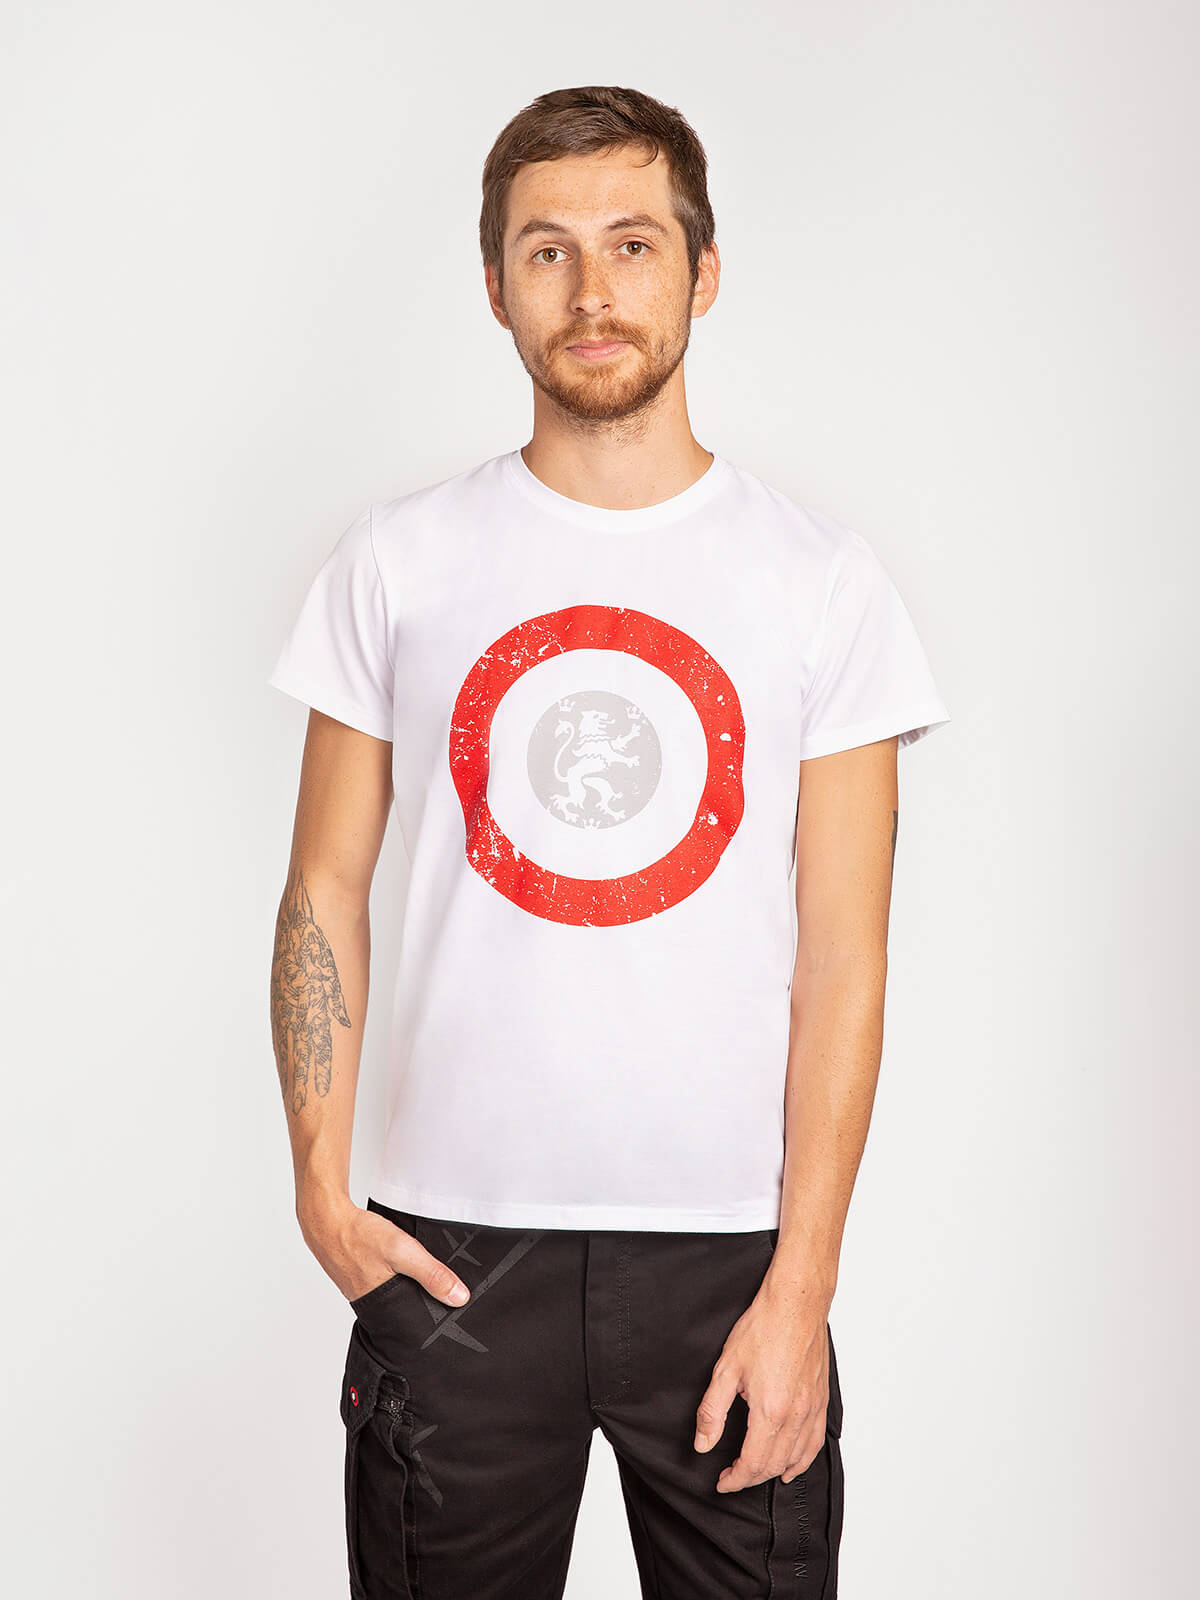 Men's T-Shirt Lion (Roundel). Color white. .